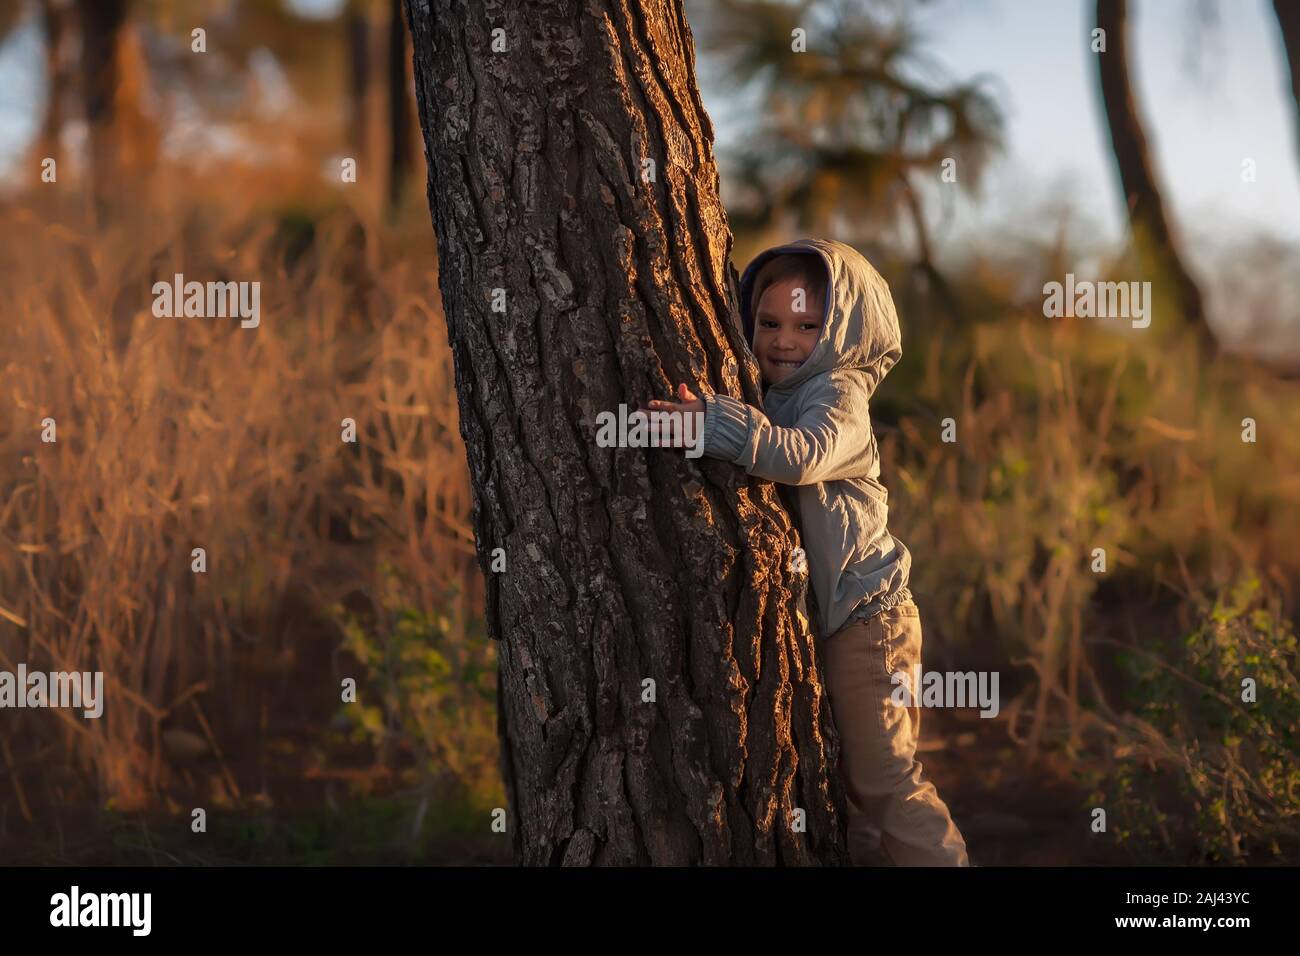 Ein kleines Kind auf einem Hügel in der Natur Wer ist umarmt einen Baum bei einem Sonnenuntergang im Winter. Stockfoto